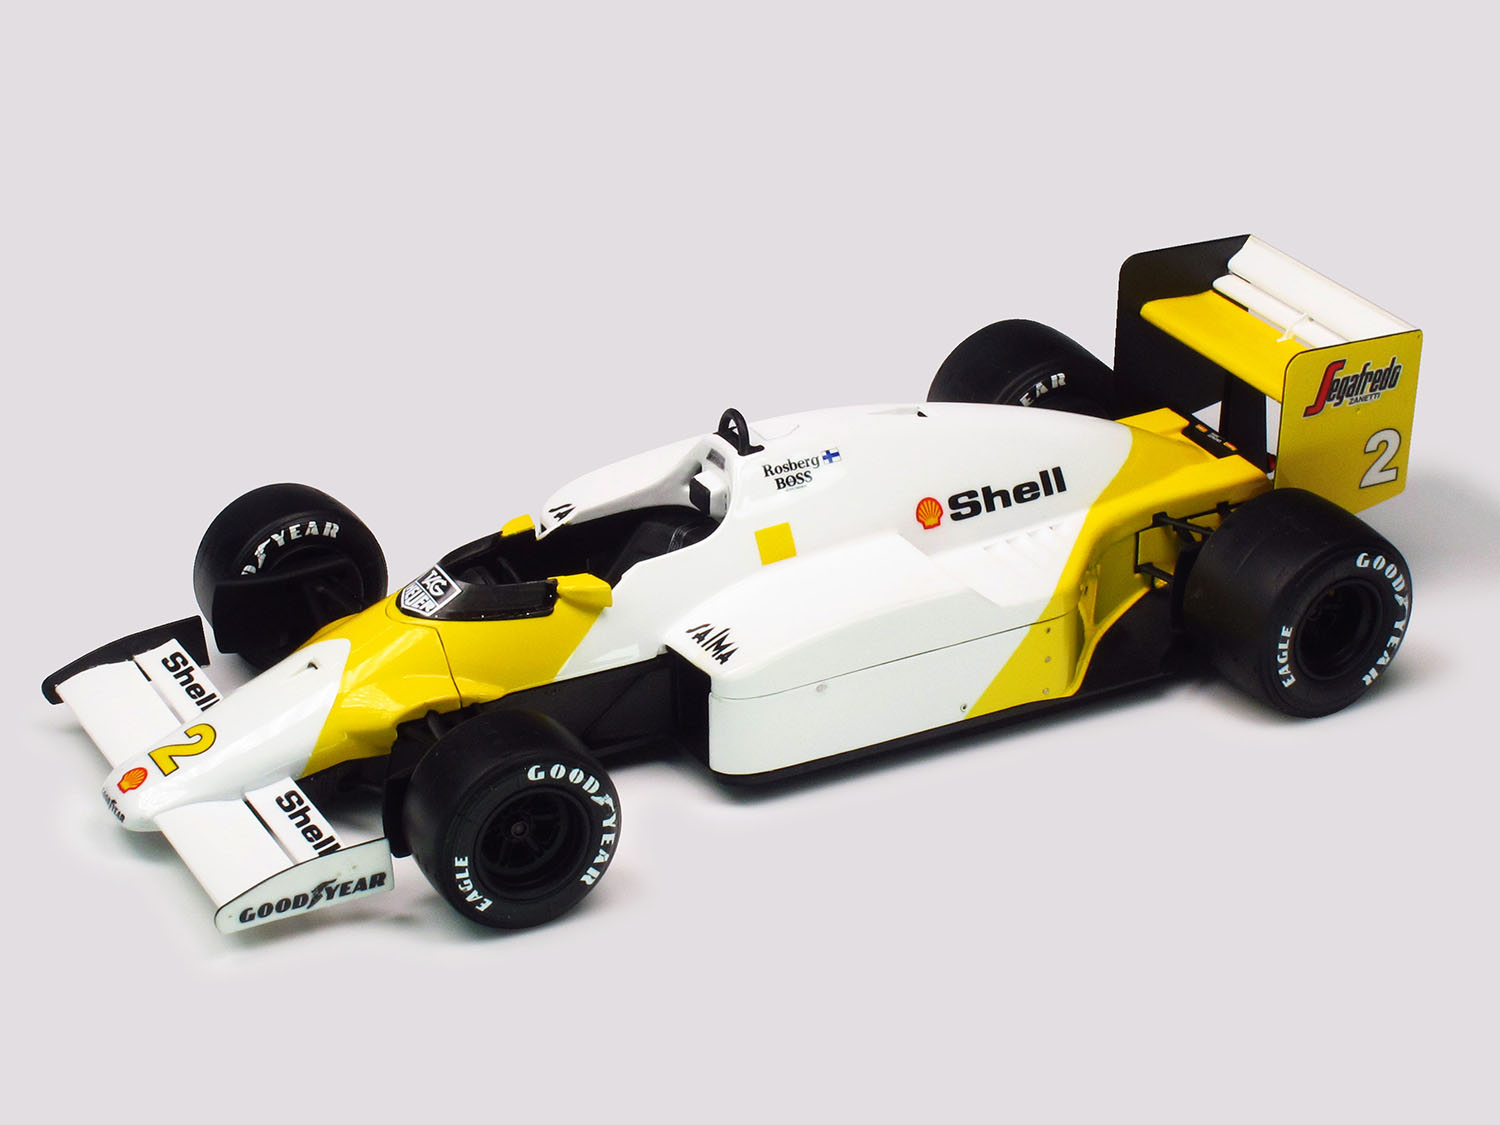 PLATZ/NUNU 1/20 McLaren MP4/2C 1986 Portuguese GP